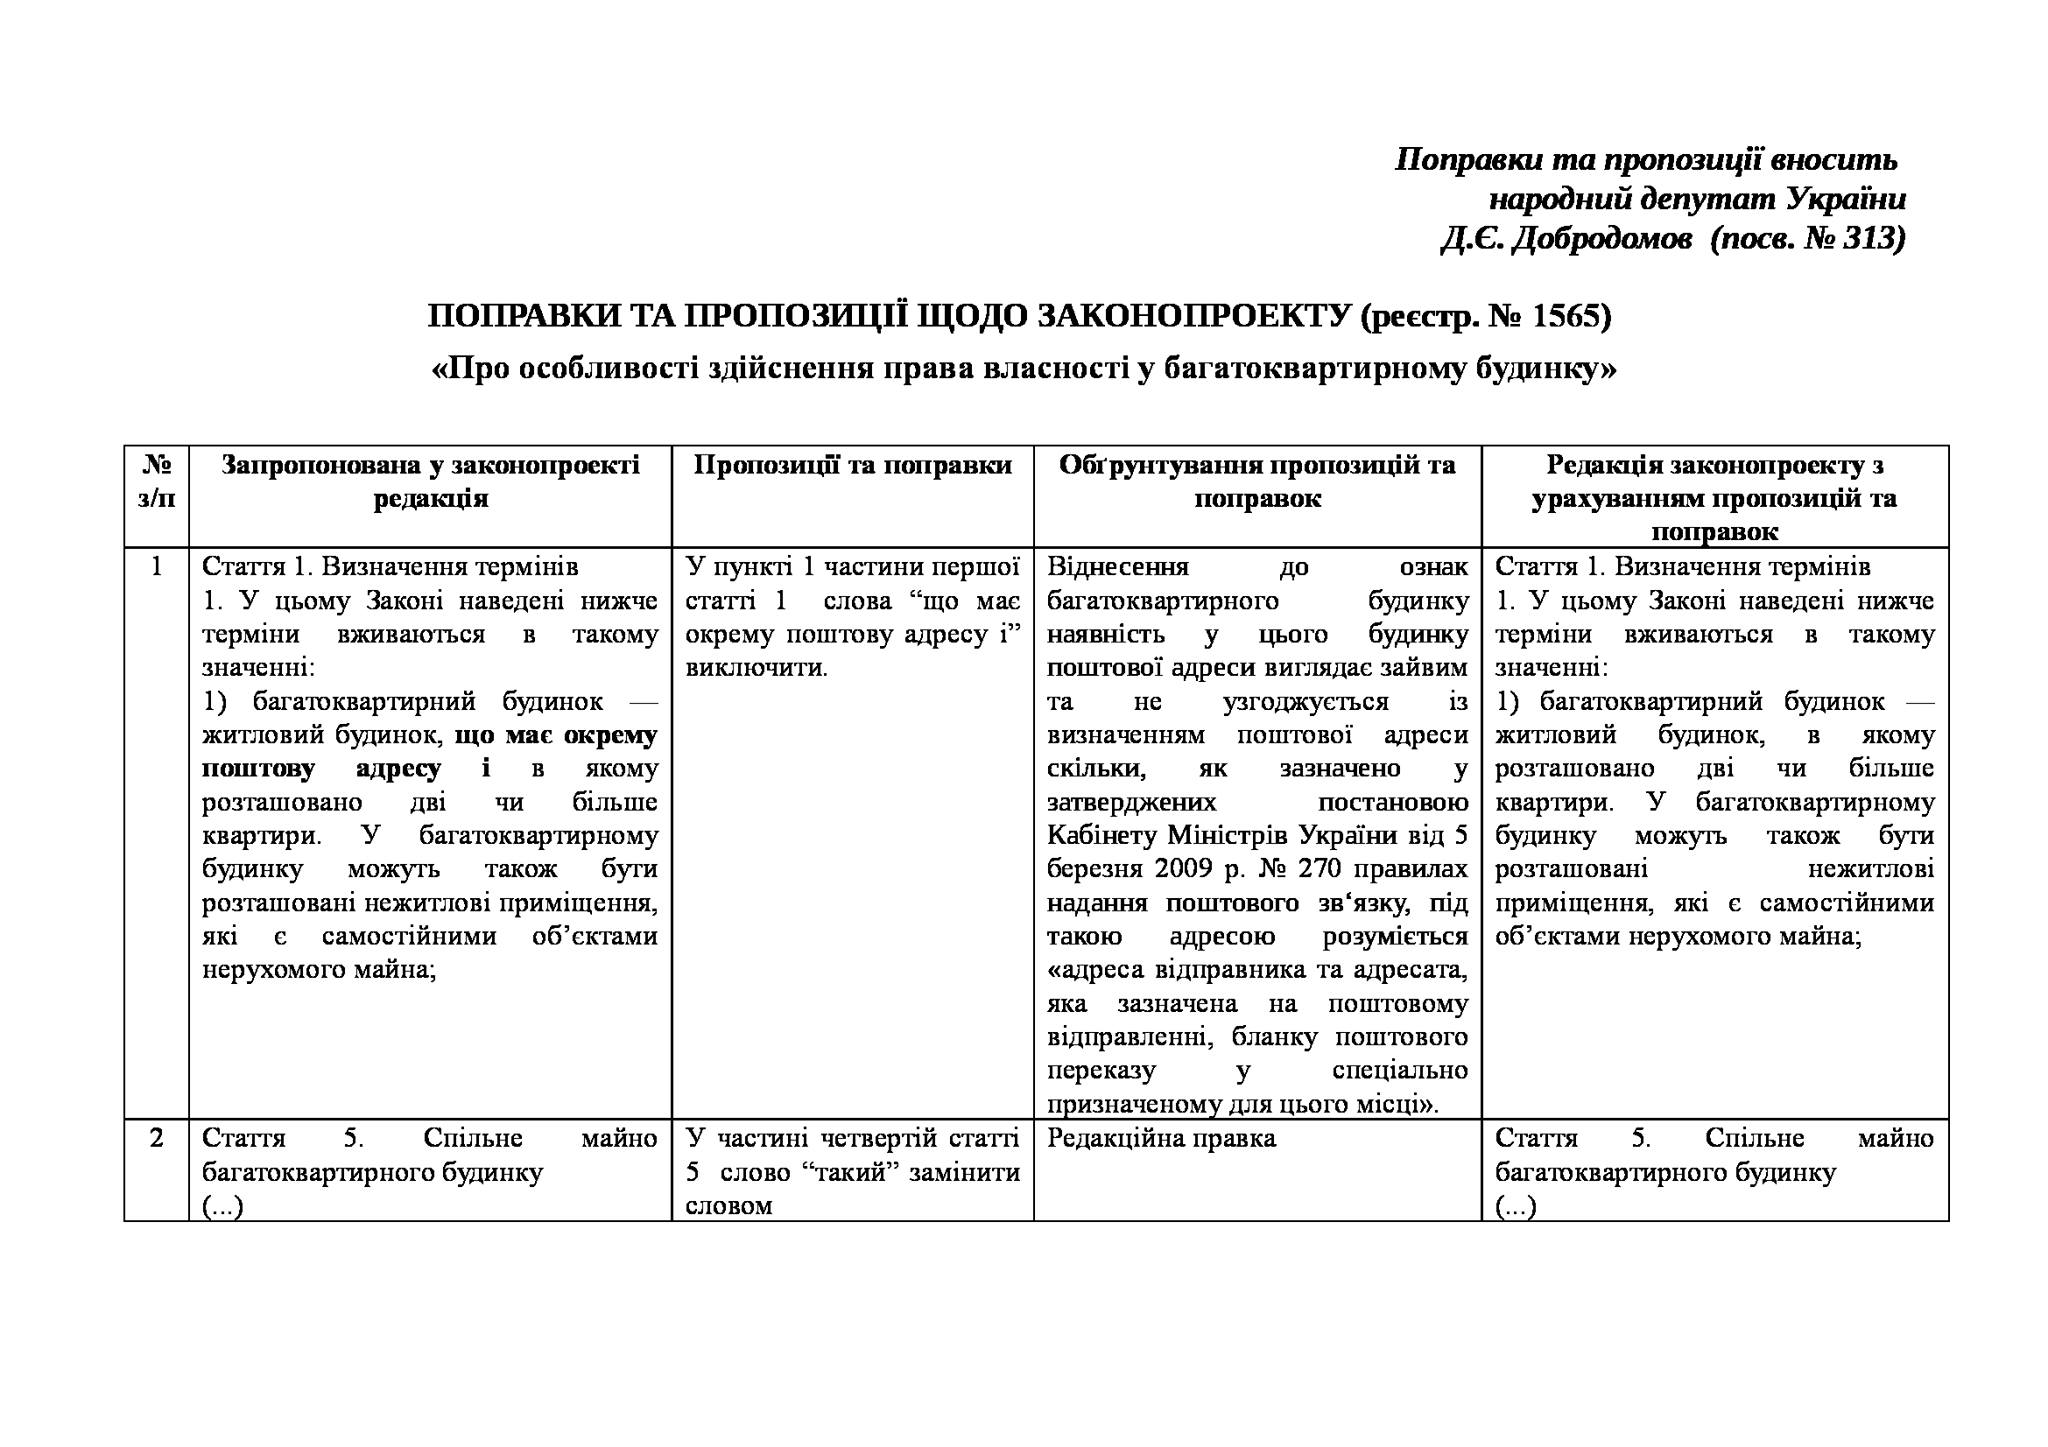 Поправки 13 січня 2015 року народний депутат України Дмитро Добродомов пообіцяв внести поправку у другому читанні до 